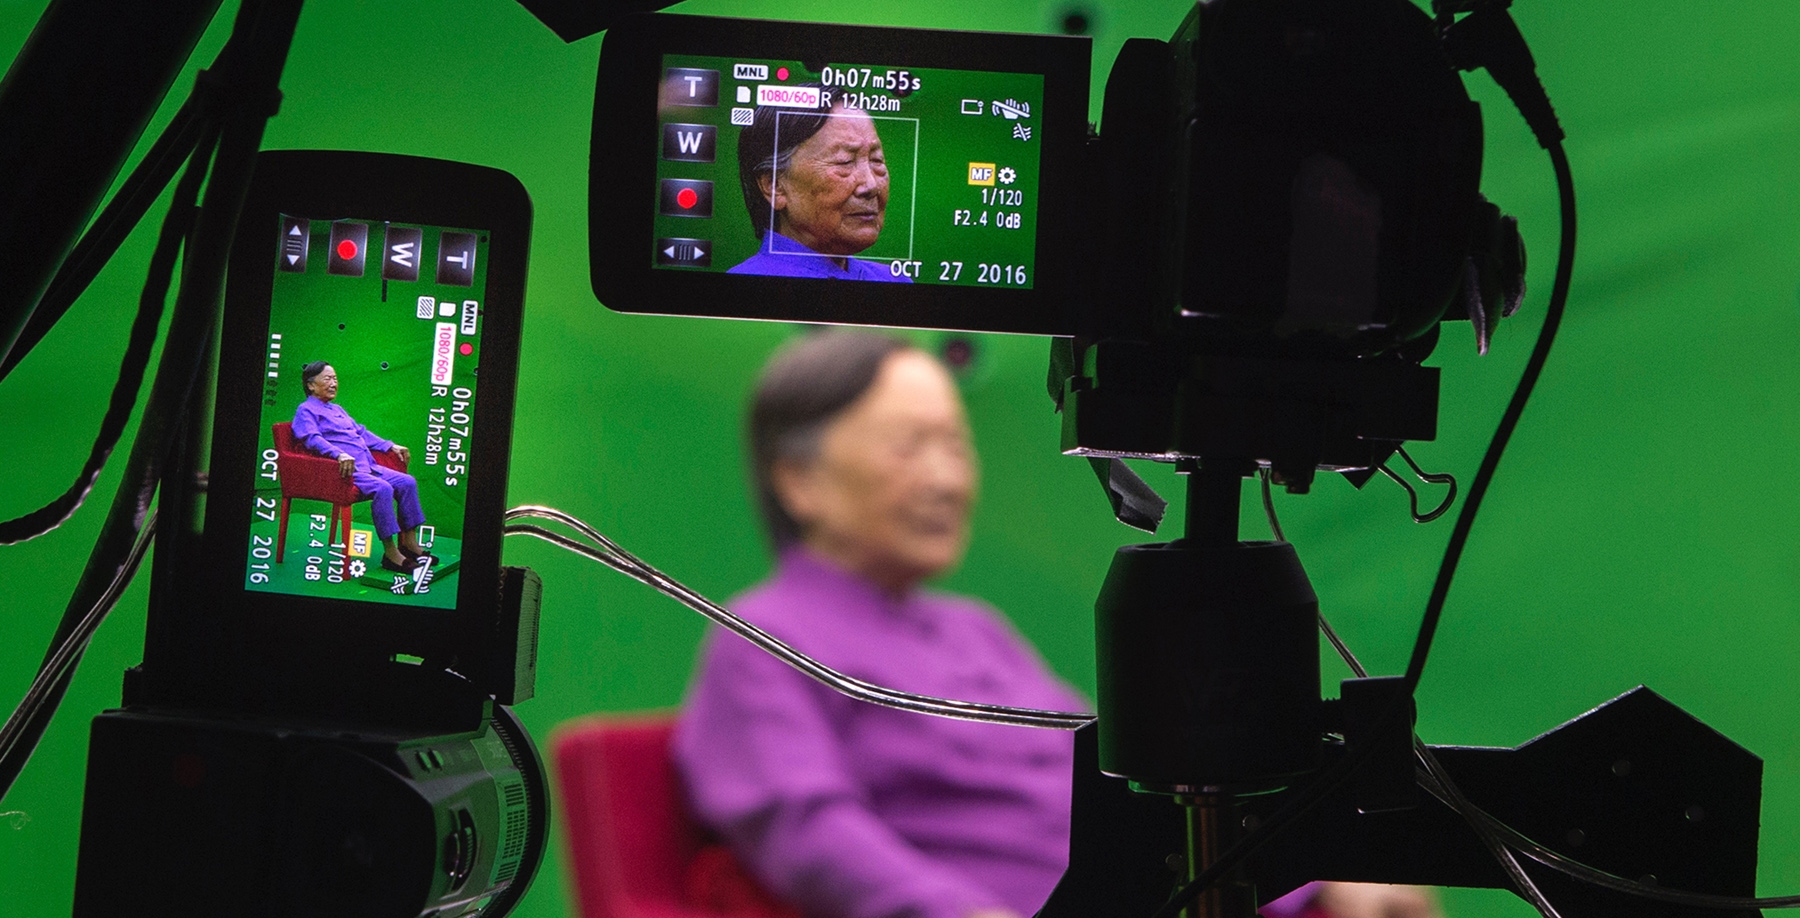 A Nanjing Massacre survivor's story lives on digitally | DeviceDaily.com